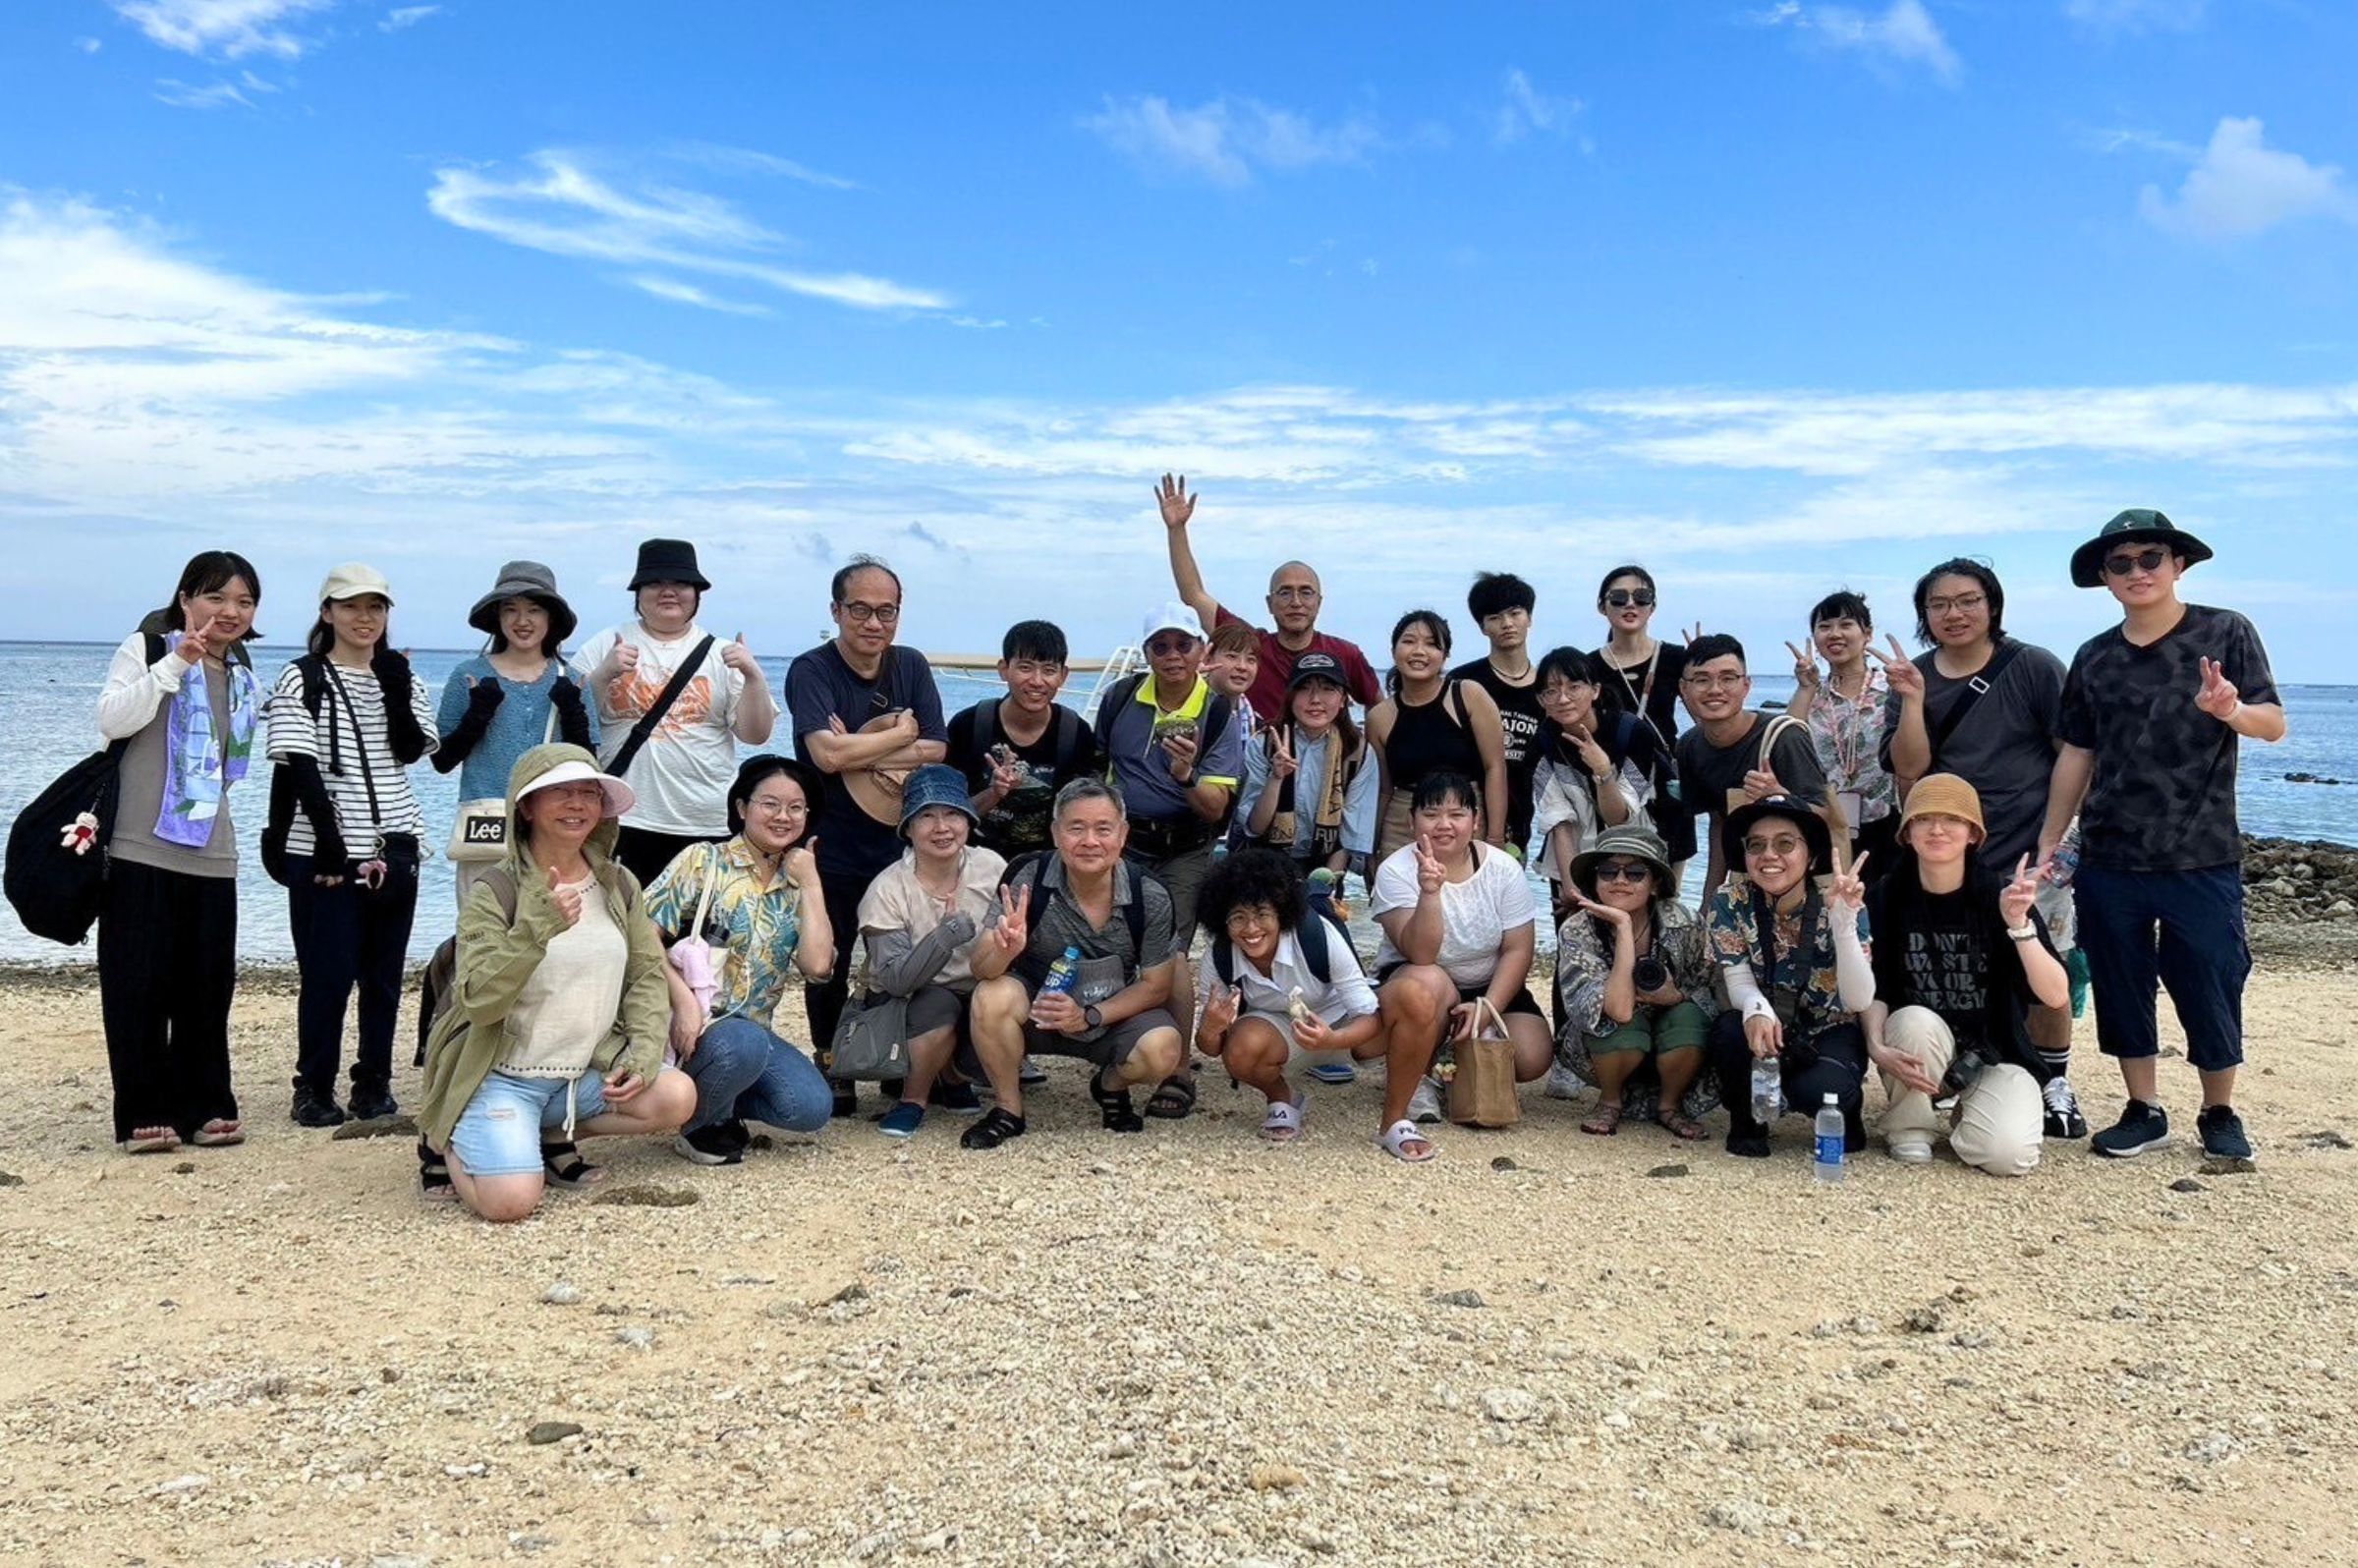 團隊赴石垣島探訪當地僅存的唯一一座石滬。照片USR桃海三生計畫團隊提供